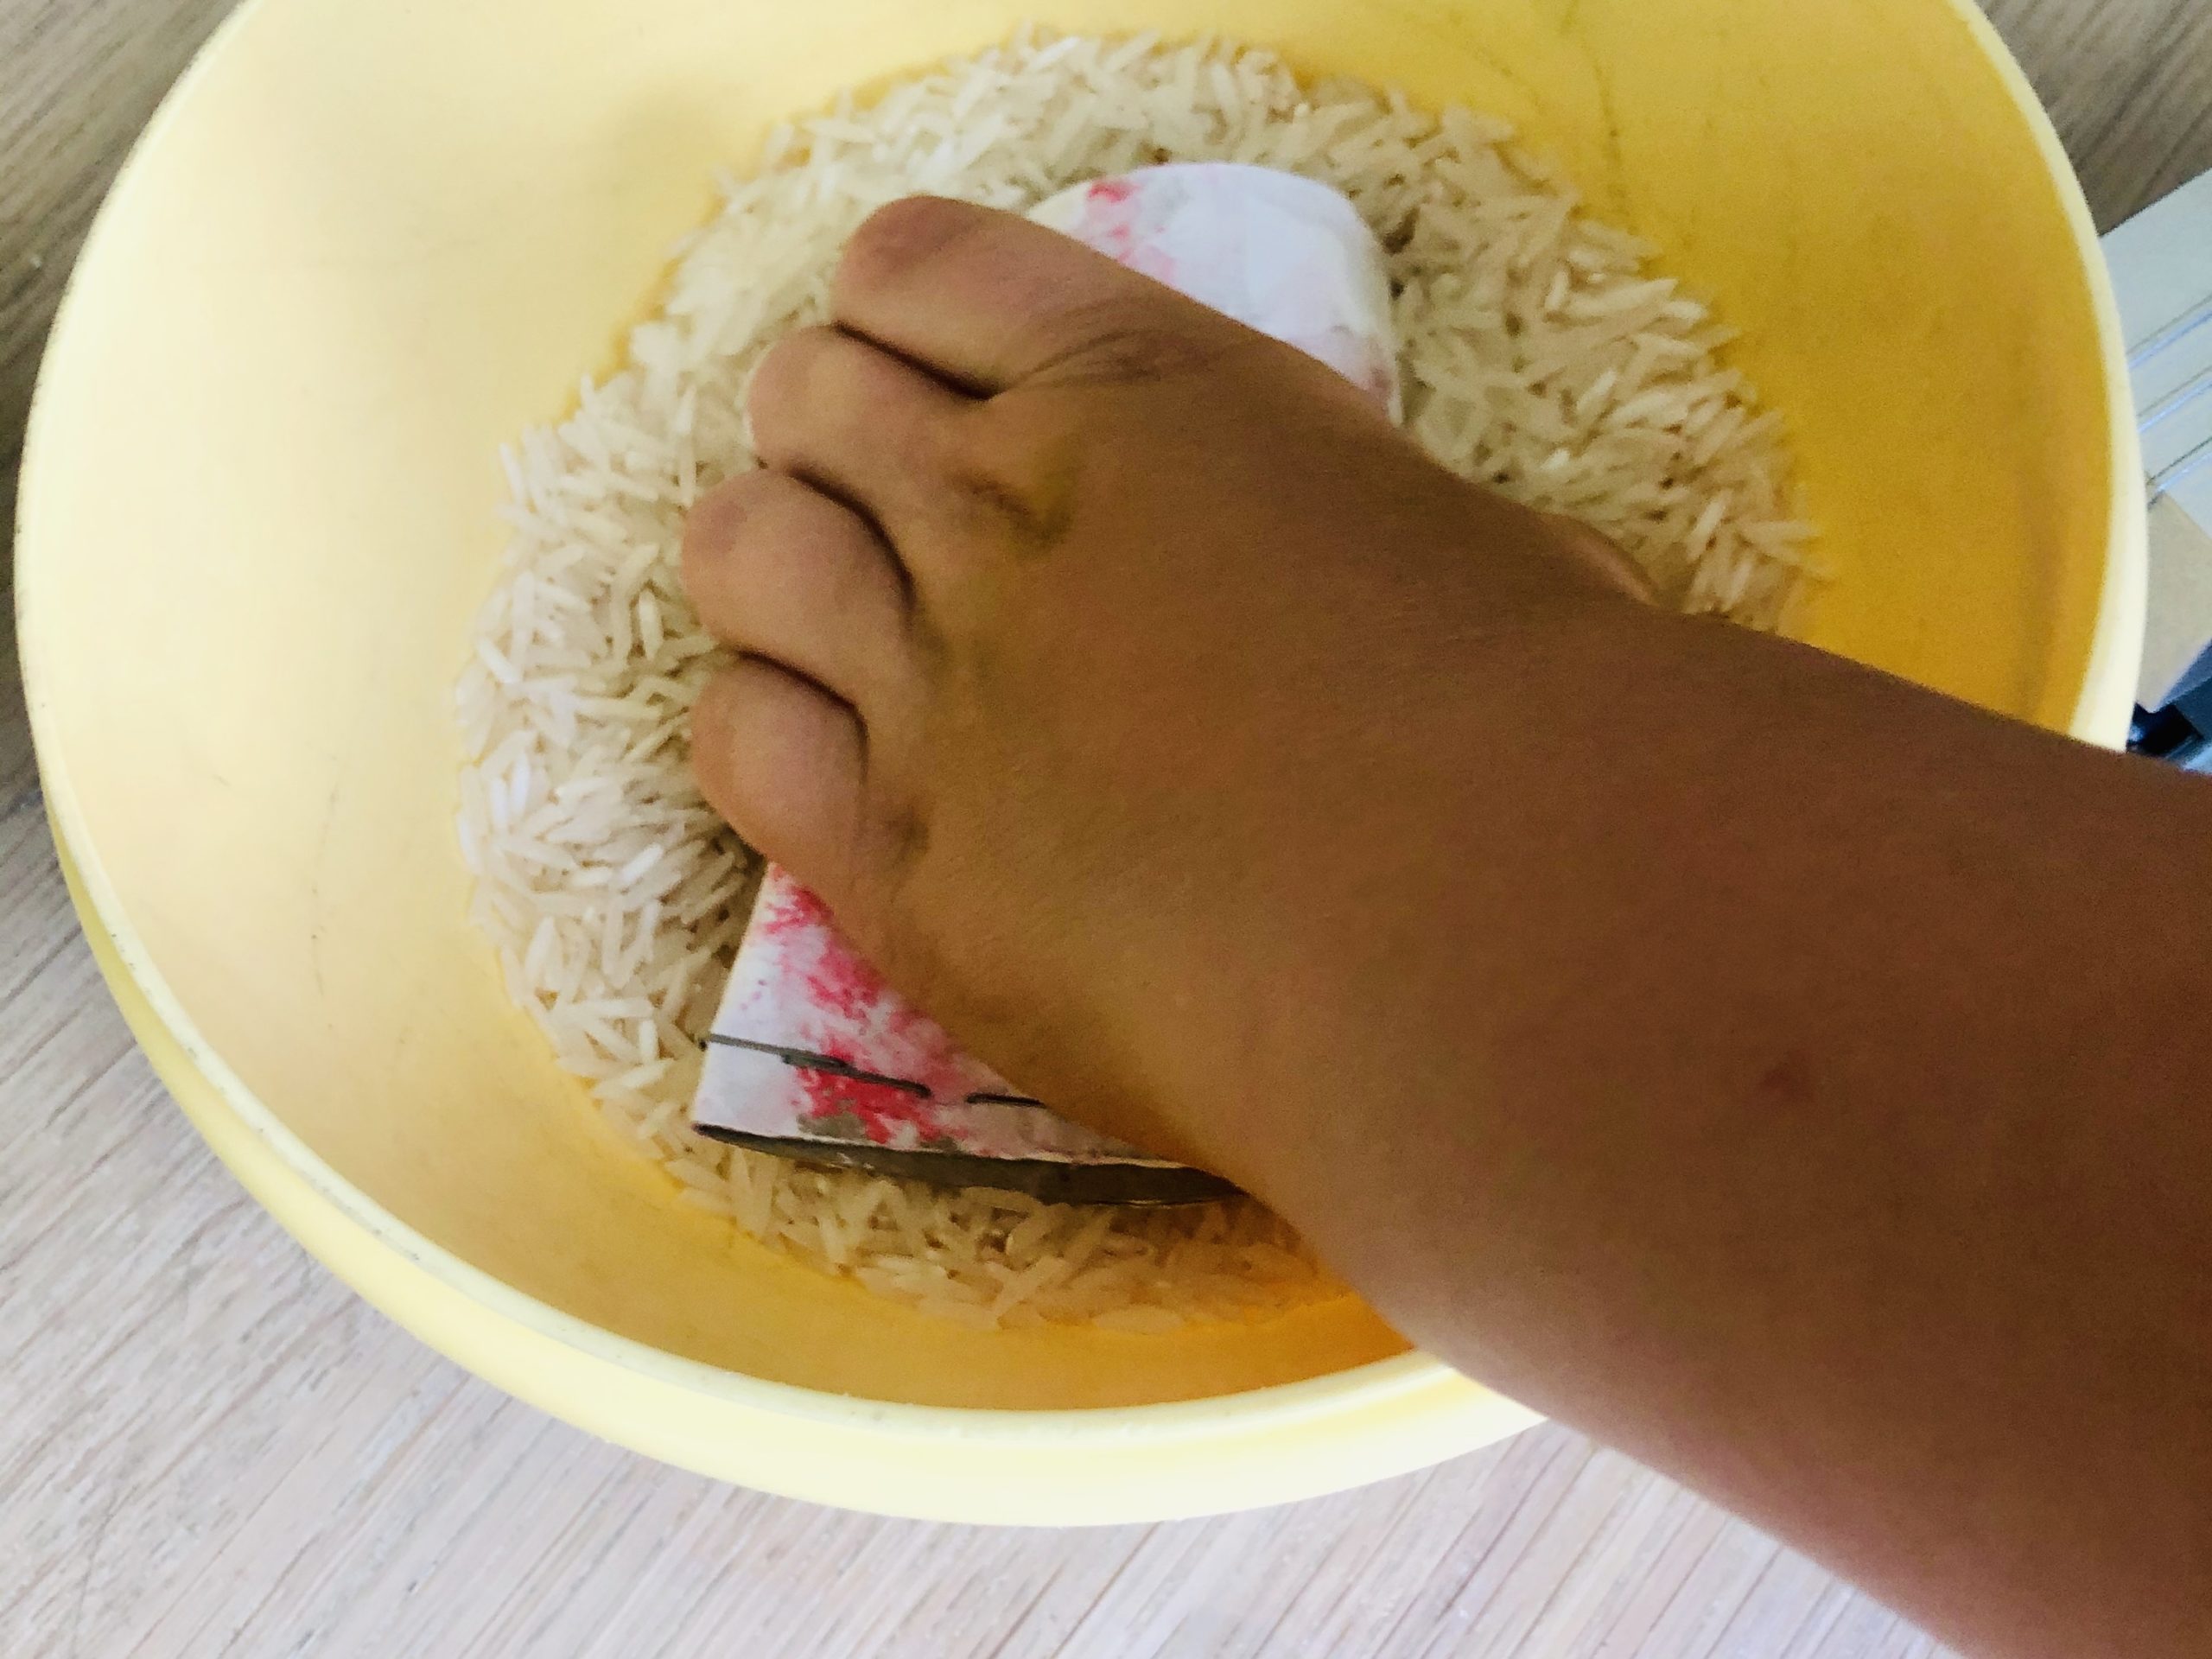 Bild zum Schritt 6 für das Bastel- und DIY-Abenteuer für Kinder: 'Jetzt Reis einfüllen. Befüllt dabei maximal die Hälfte der Klorolle.'